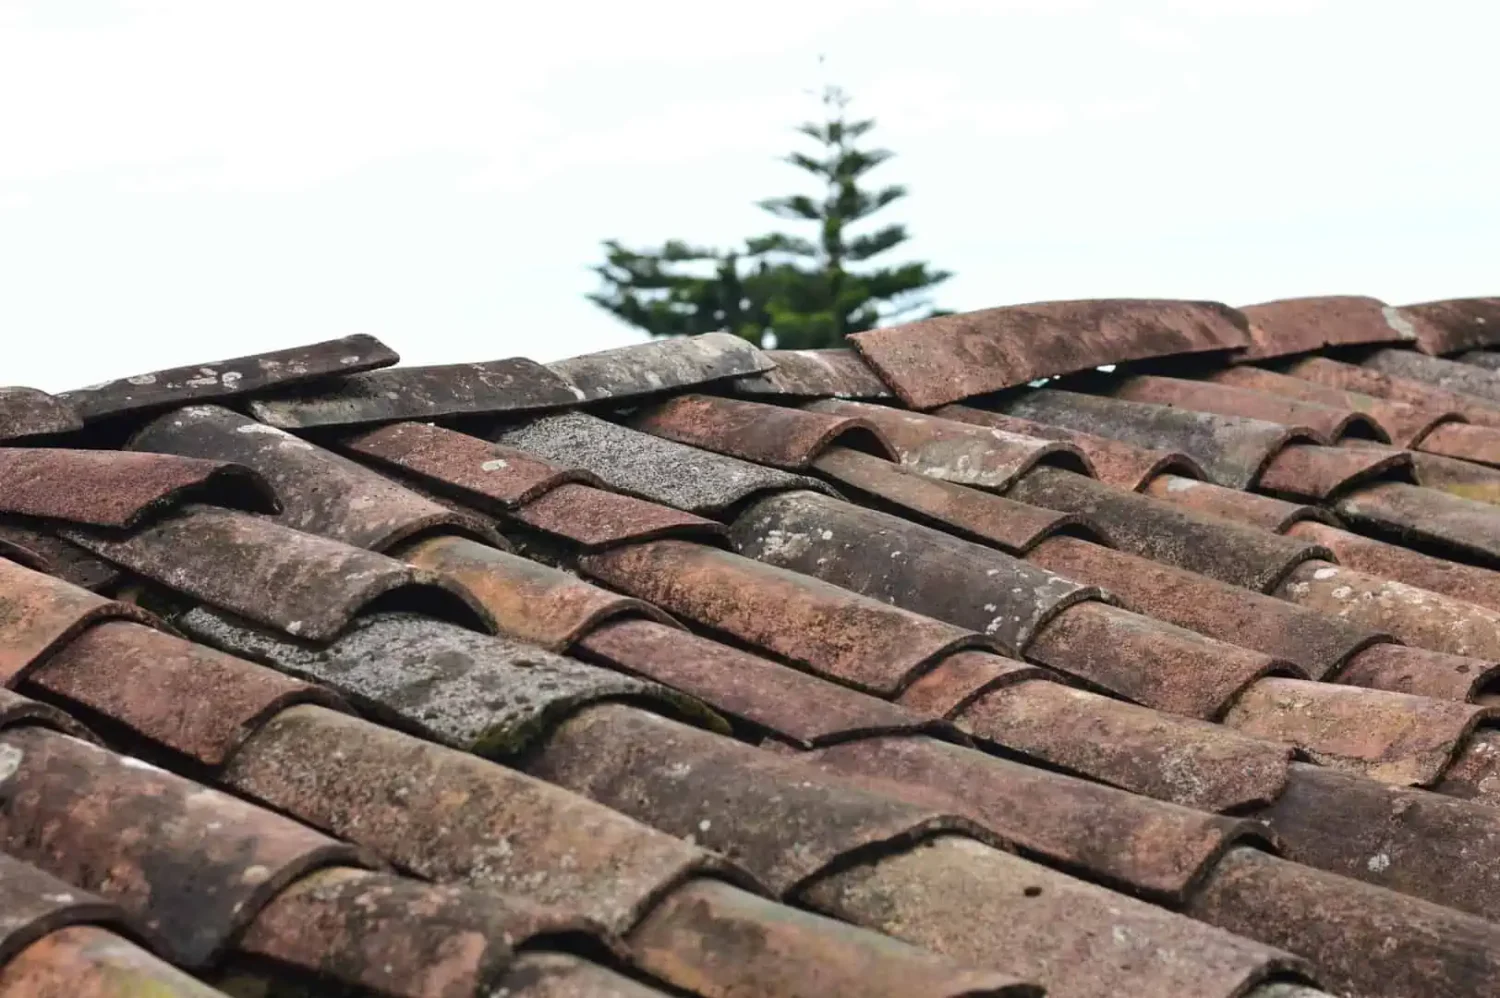 Tile roof in need of repair